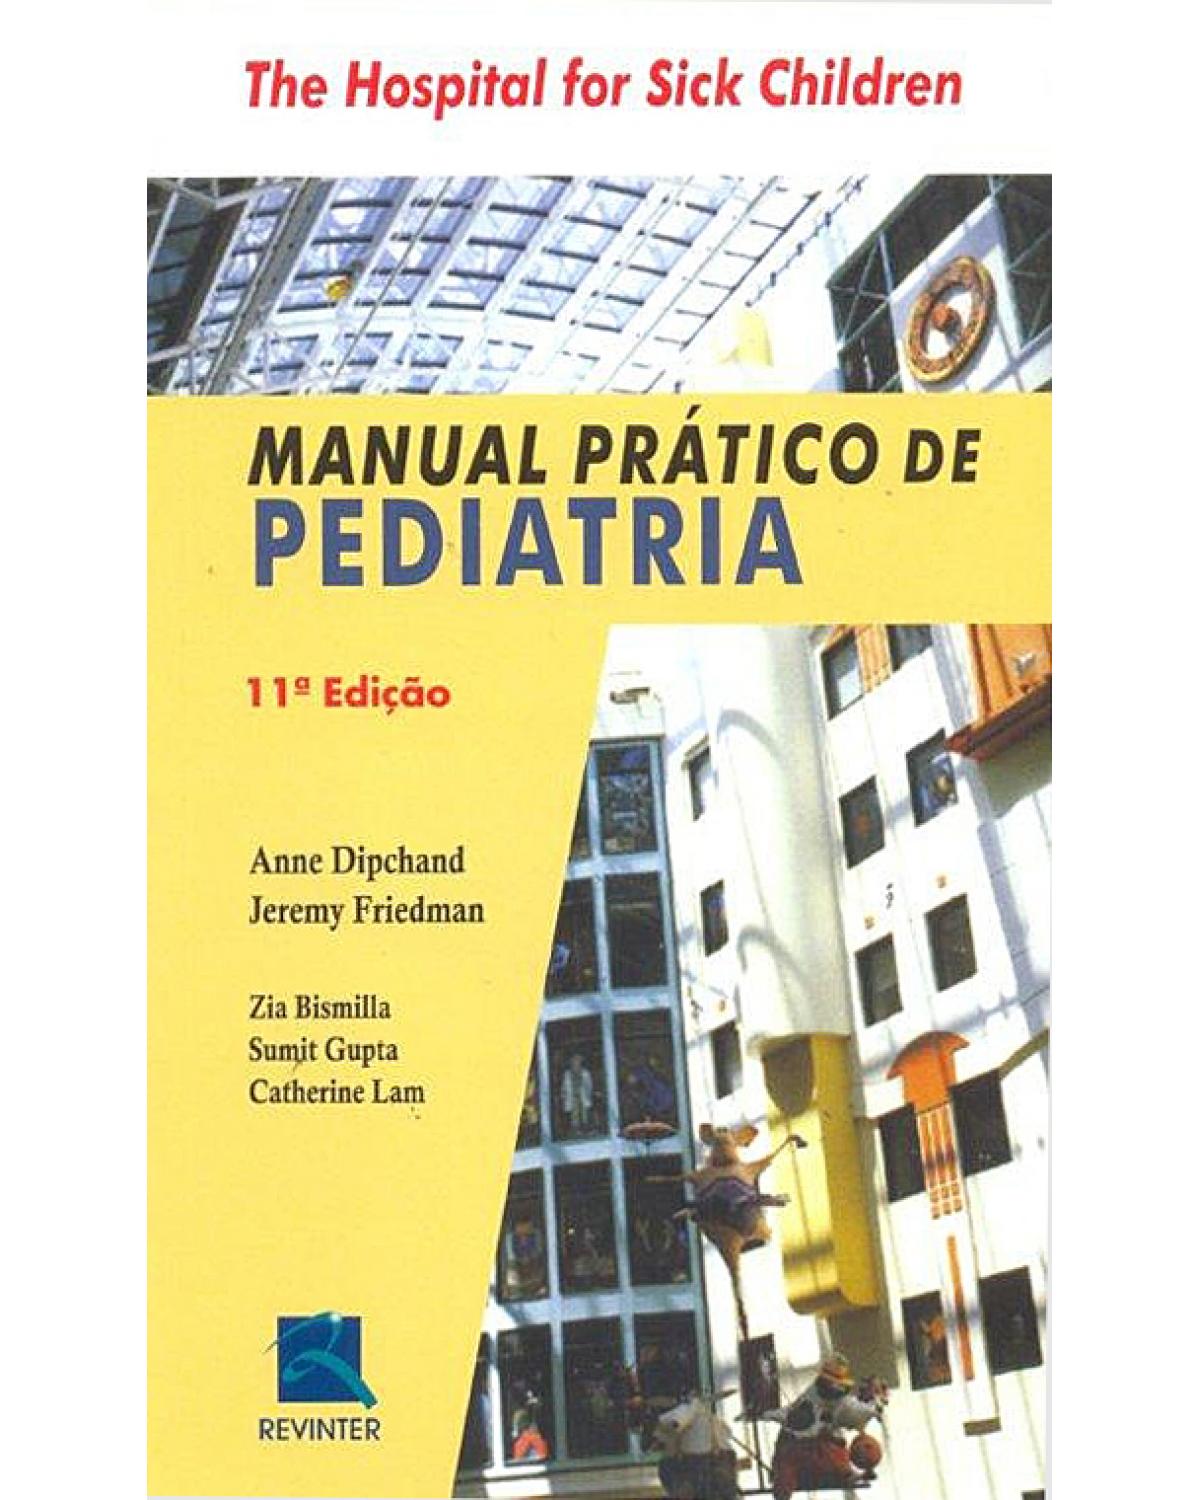 Manual prático de pediatria - 11ª Edição | 2012